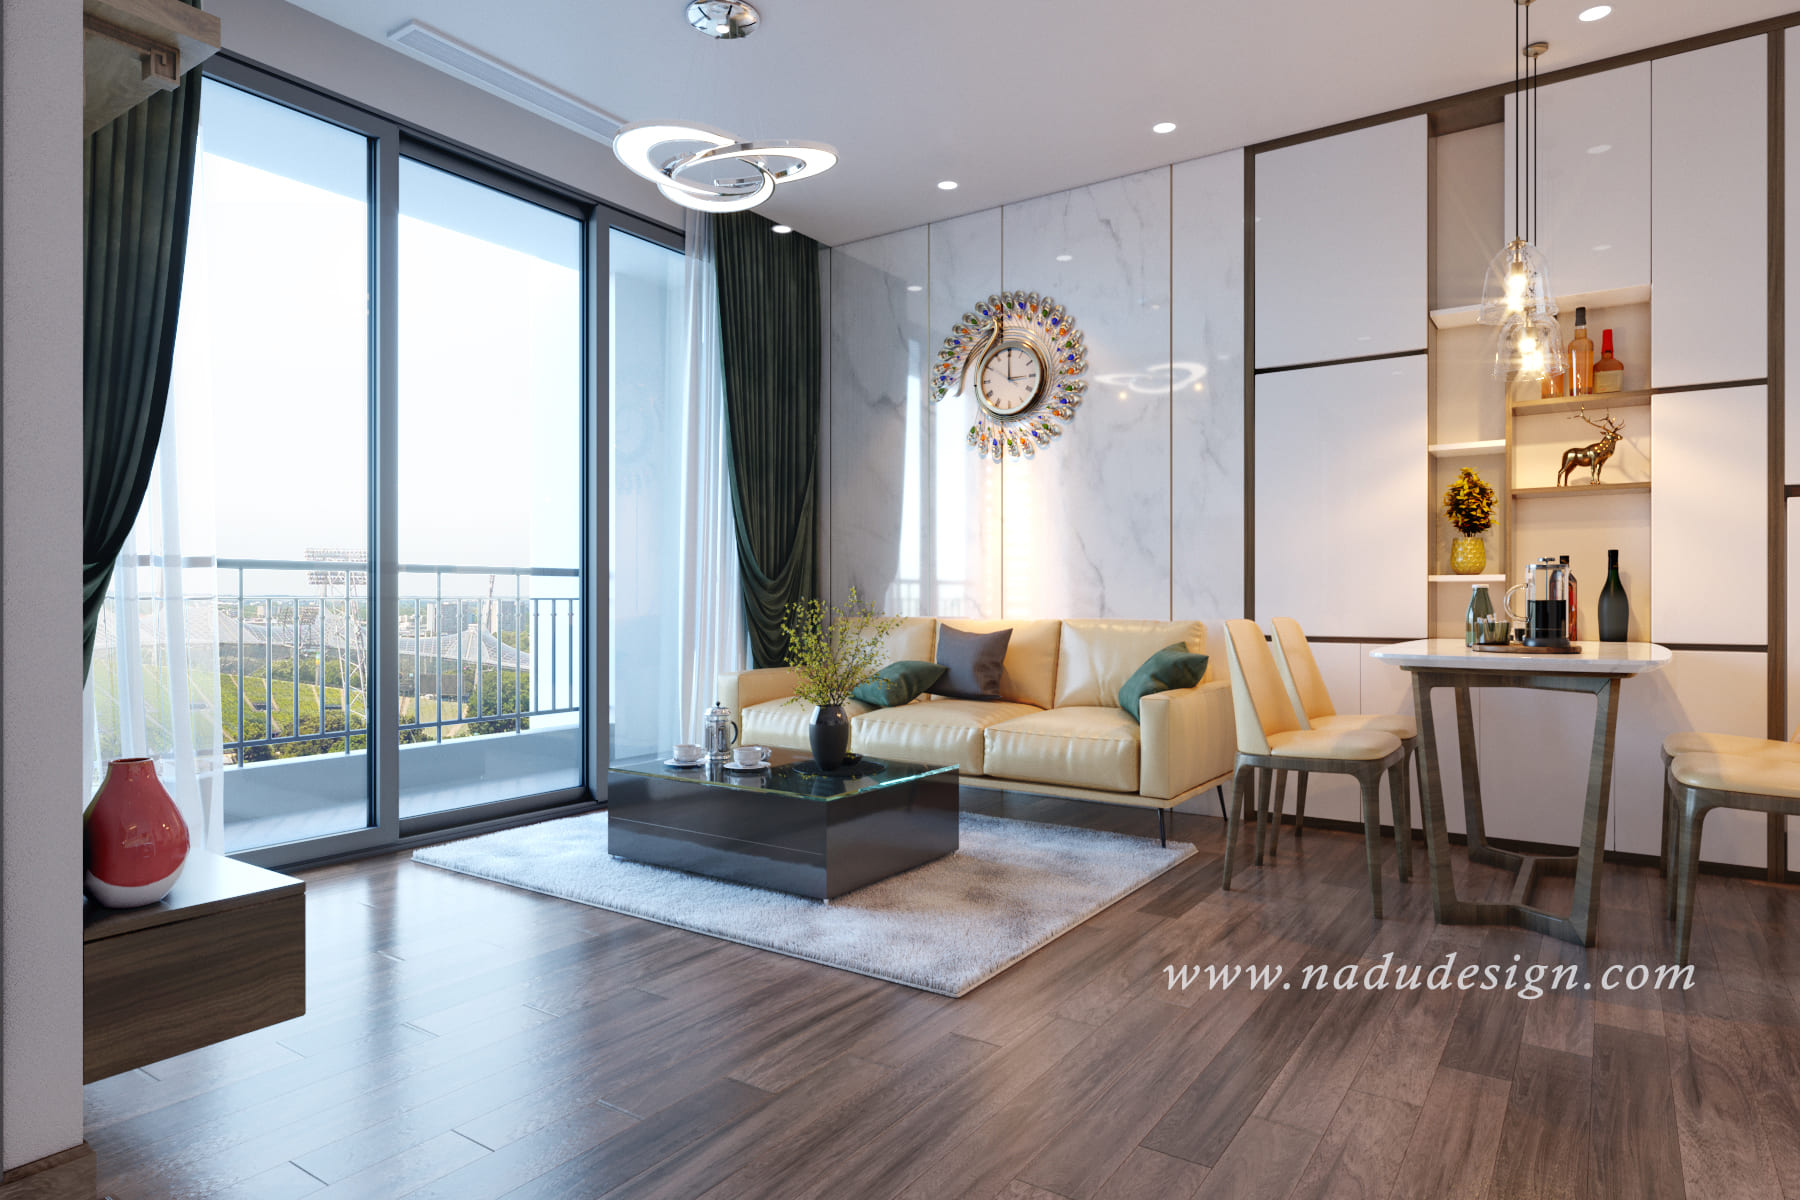 Bạn muốn thảm lông trải sàn phòng khách của mình thật cao cấp với một màu sắc và chất liệu đẹp mắt? Hãy đến với chúng tôi và trải nghiệm những mẫu thảm lông trải sàn phòng khách cao cấp đẹp nhất được thiết kế đặc biệt và hoàn hảo cho không gian sống của bạn.